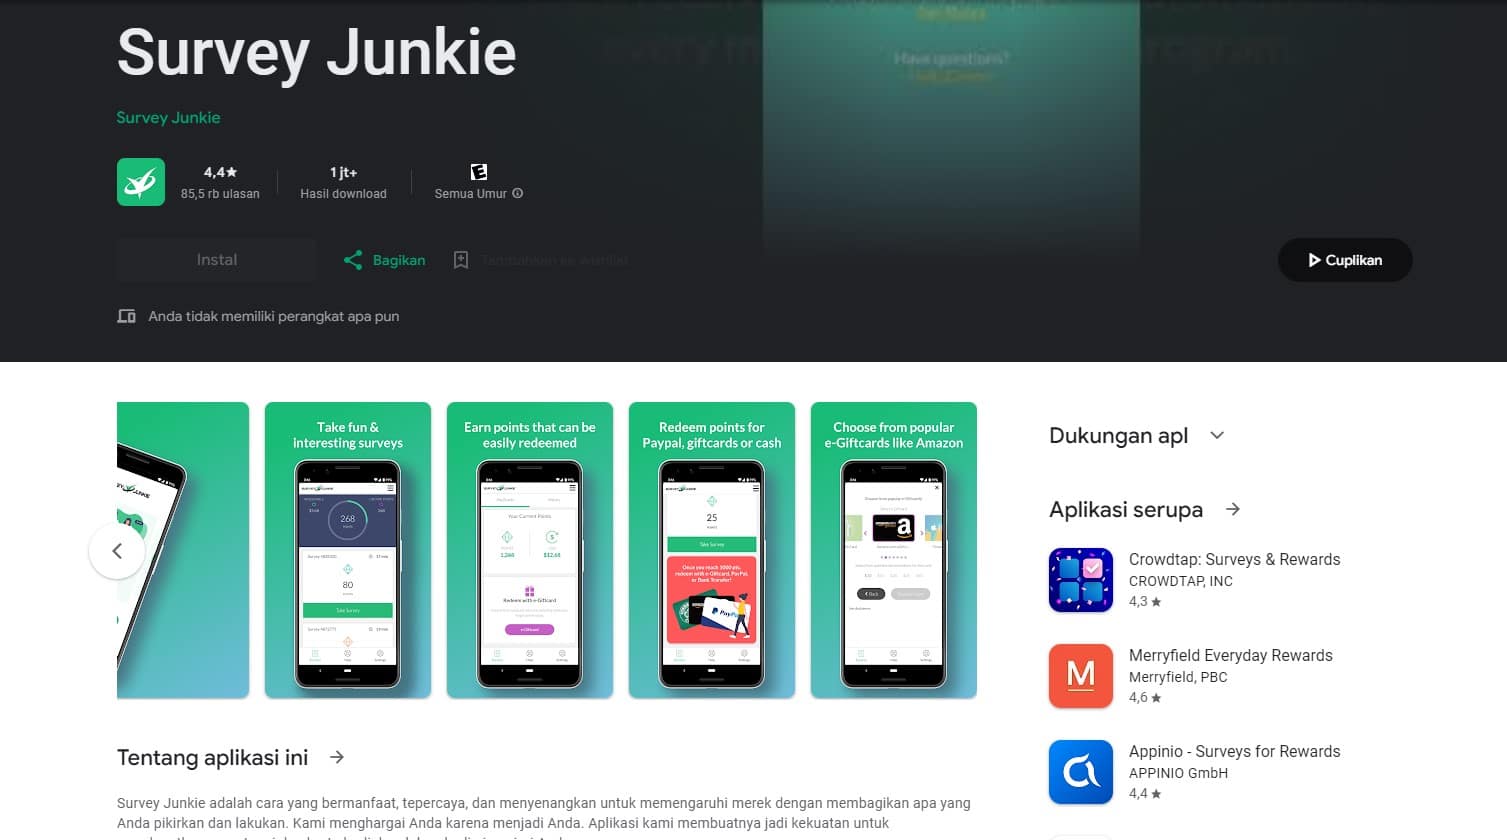 Survey Junkie, Aplikasi Penghasil Uang dan DANA dengan Survei